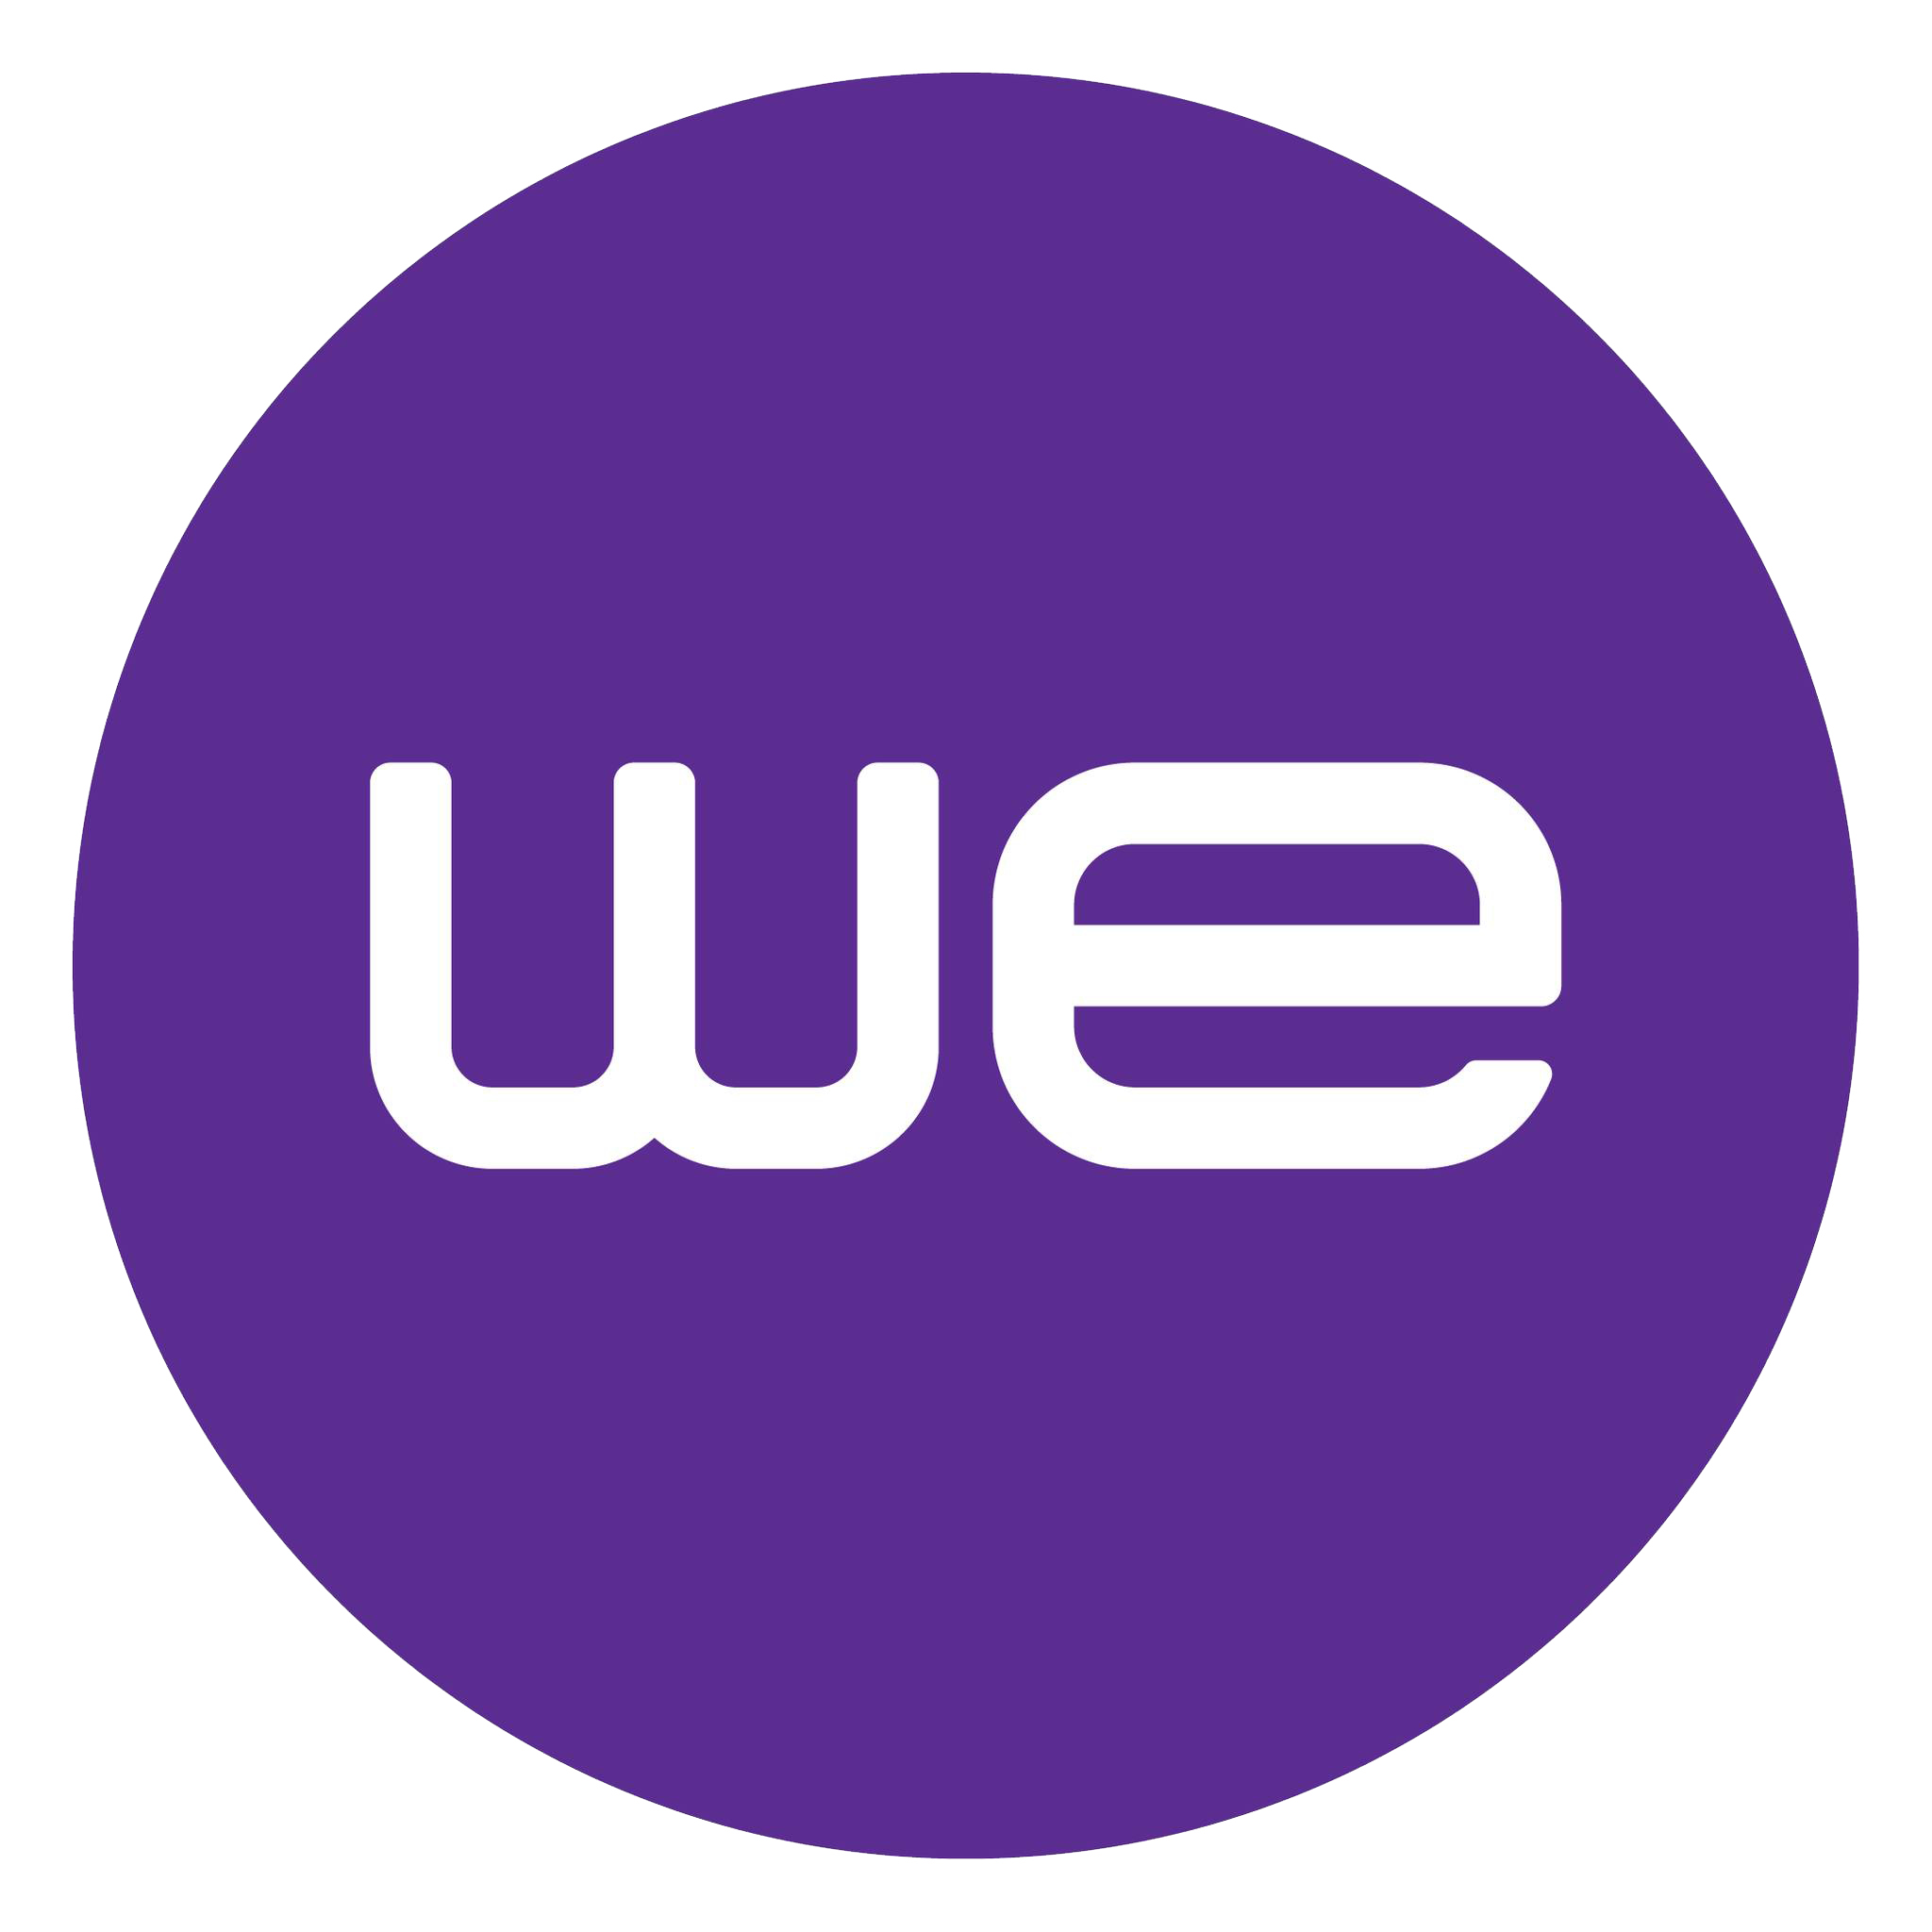 We Logo